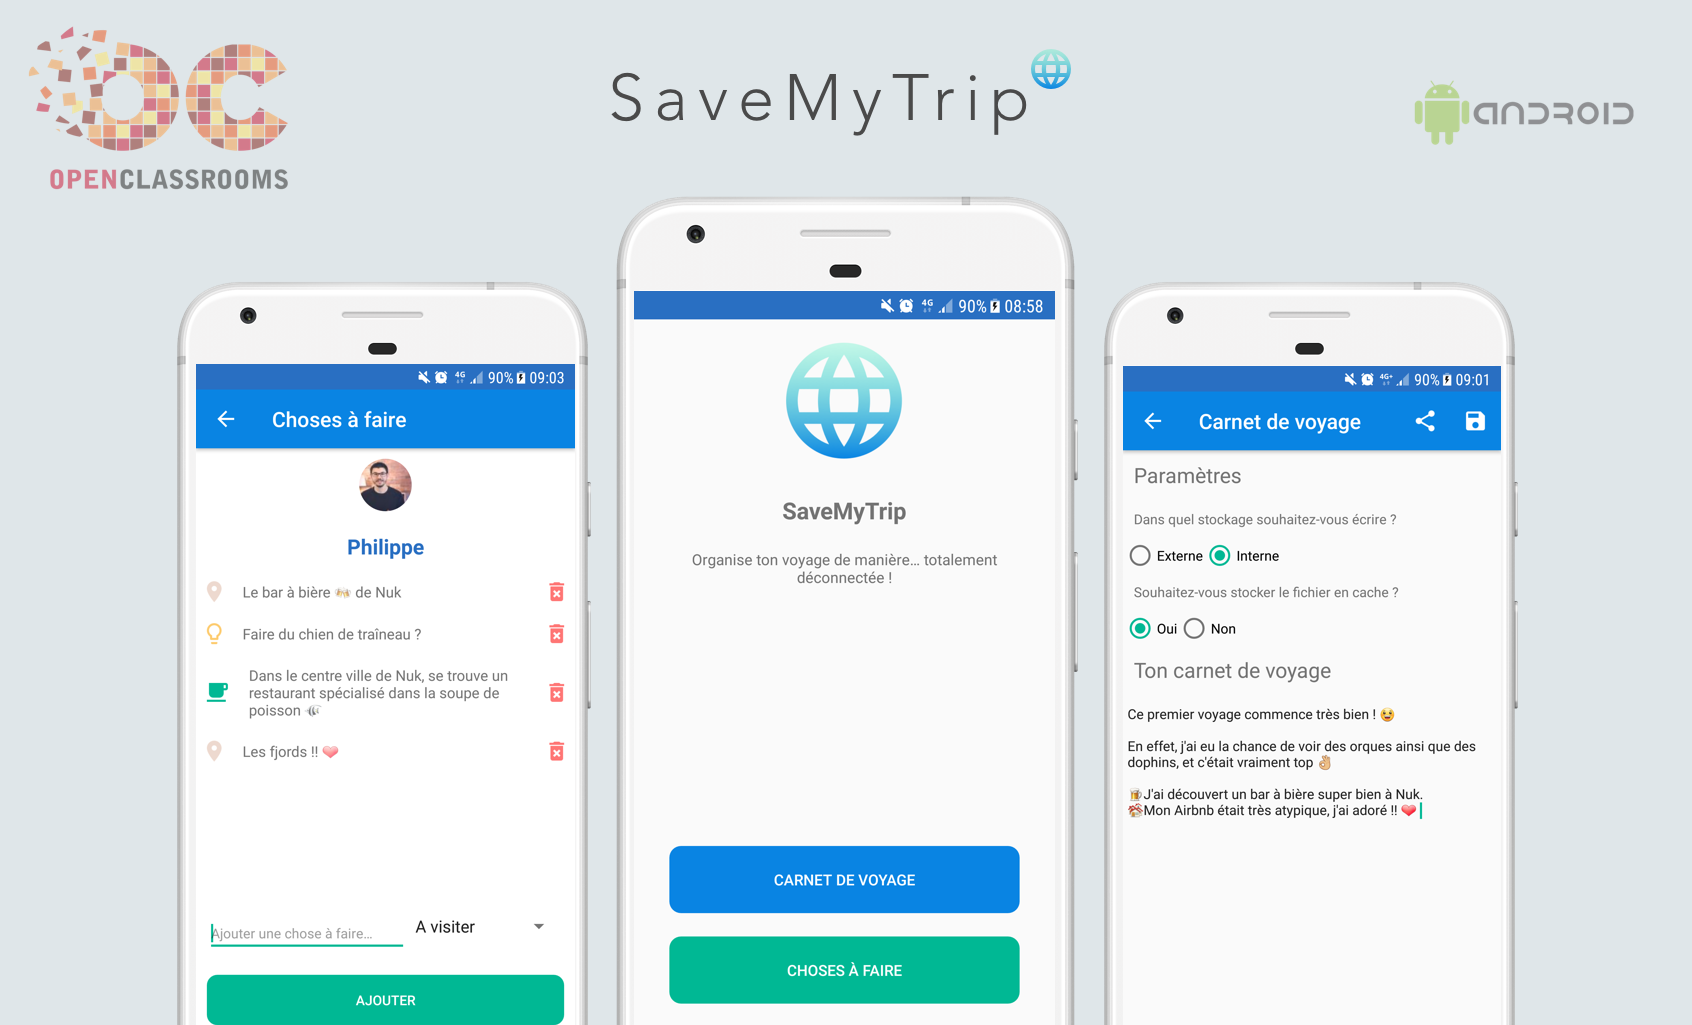 3 visualisations de SaveMyTrip : sur un portable à gauche, les détails du compte, sur le portable du milieu, le carnet de voyage, sur le portable de droite, les paramètres de stockage